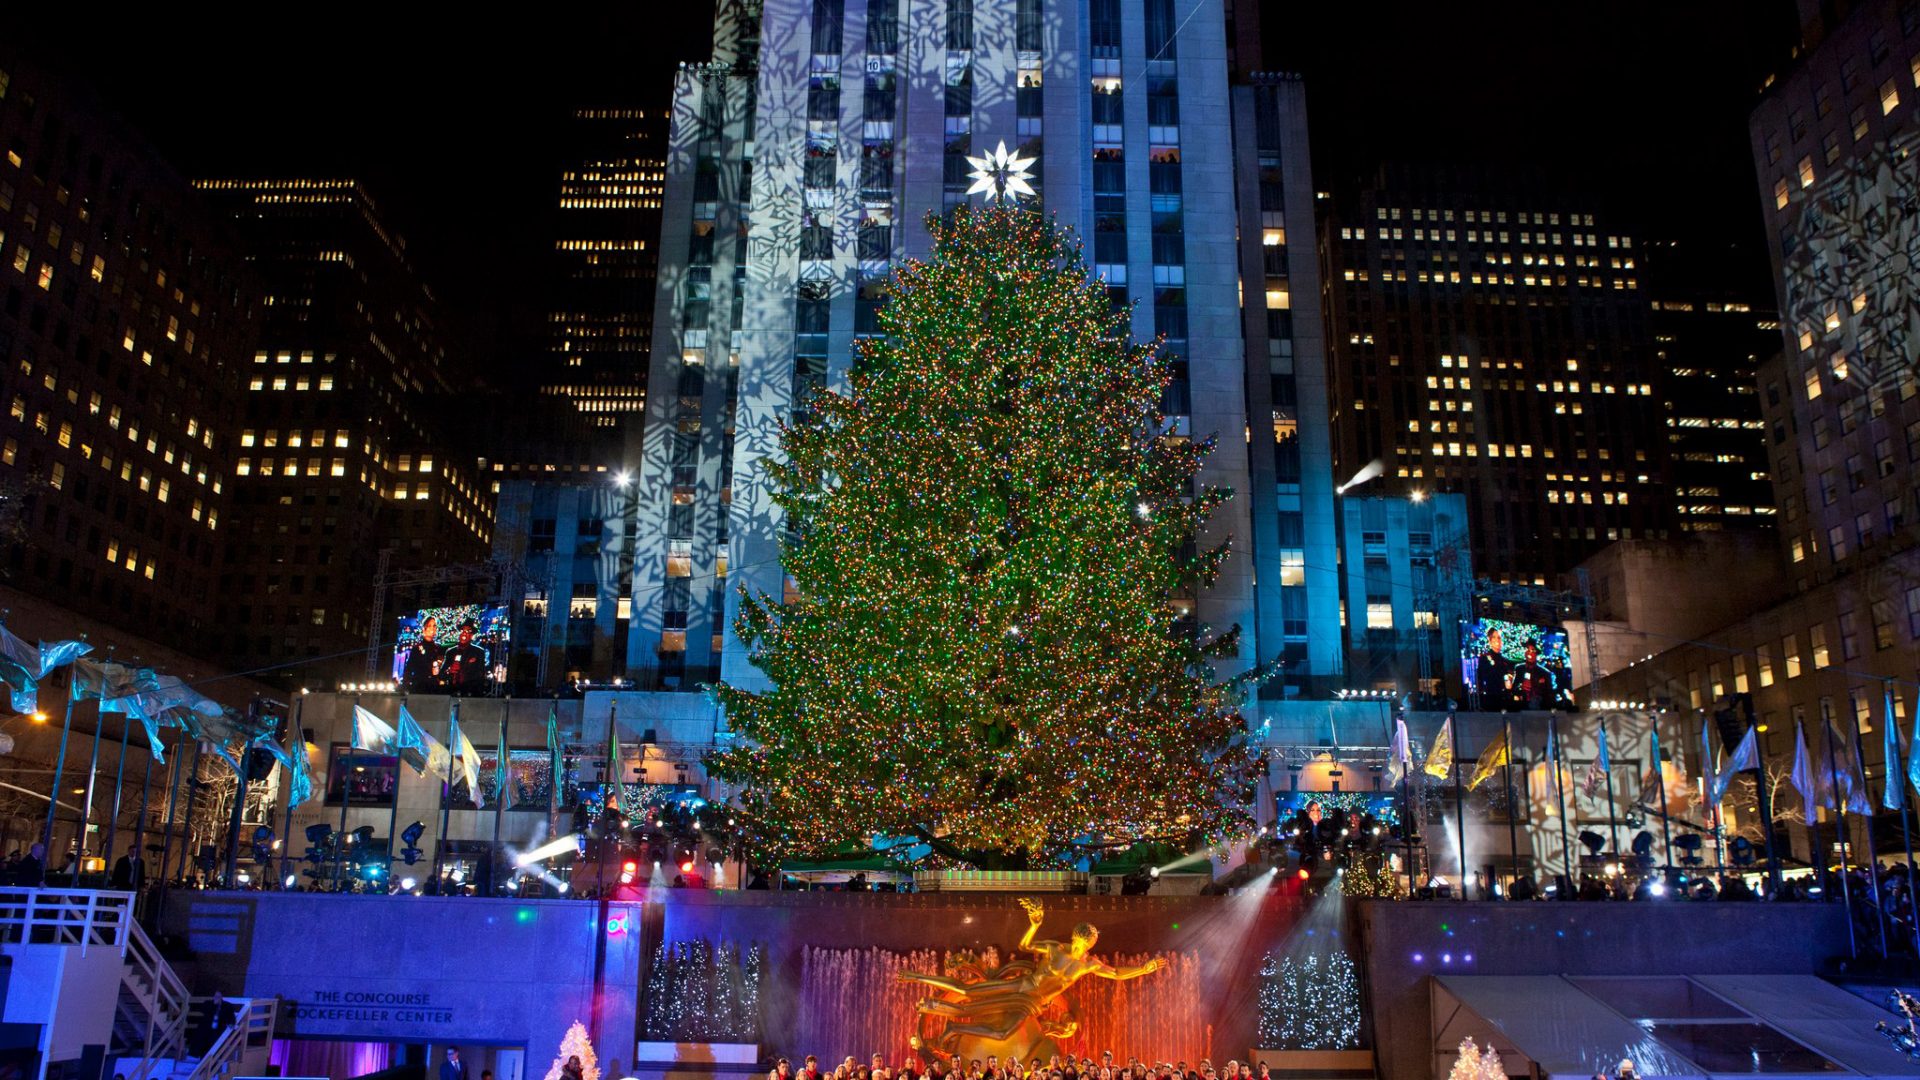 Rockefeller Center New York Christmas Tree Lighting , HD Wallpaper & Backgrounds